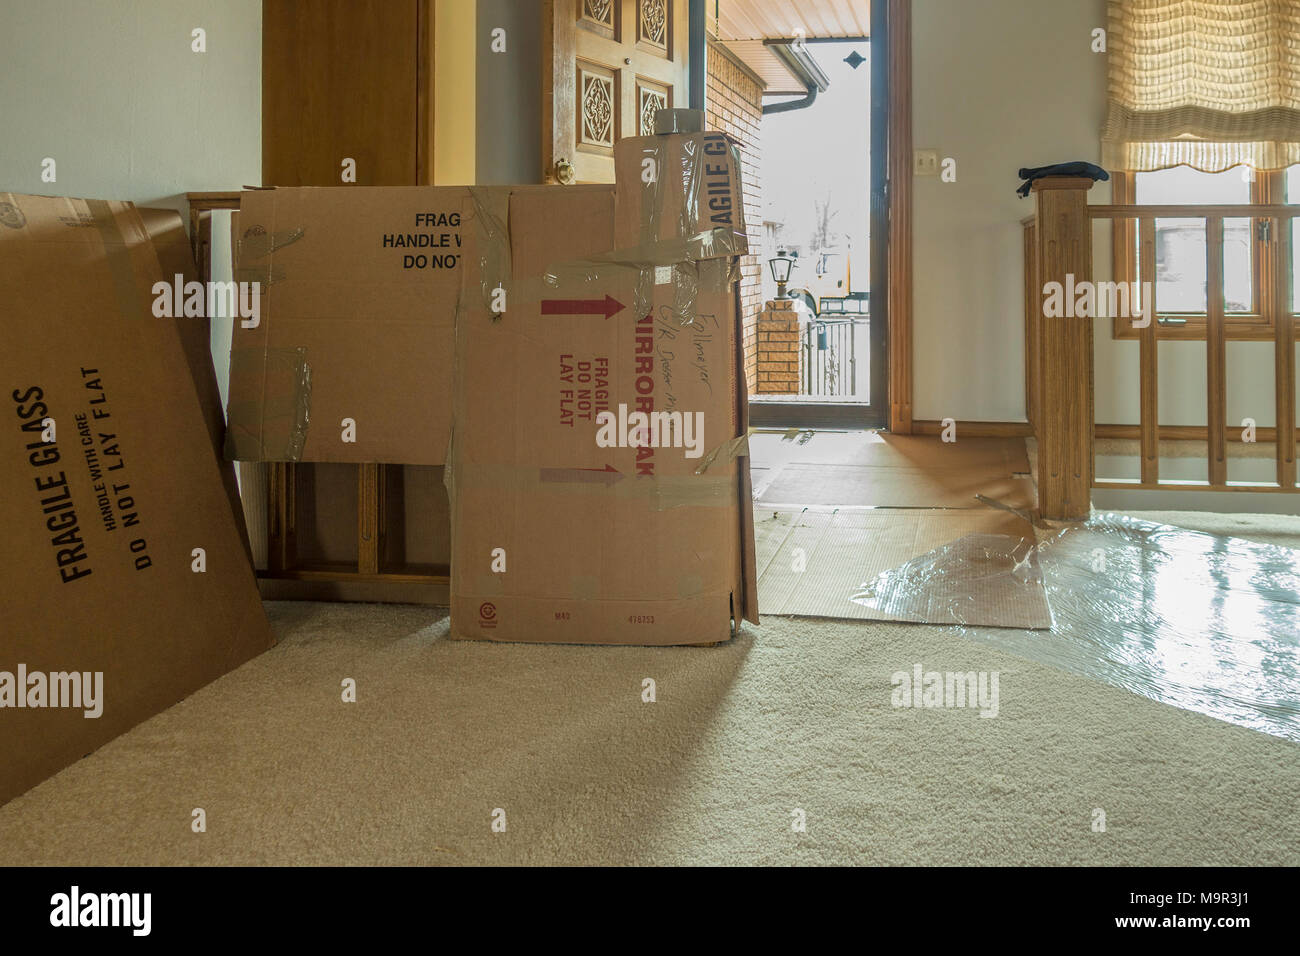 Une maison avec des coureurs de protection en plastique sur le sol et des boîtes en carton la protection du bois avant de déplacer les meubles. Wichita, Kansas, États-Unis. Banque D'Images